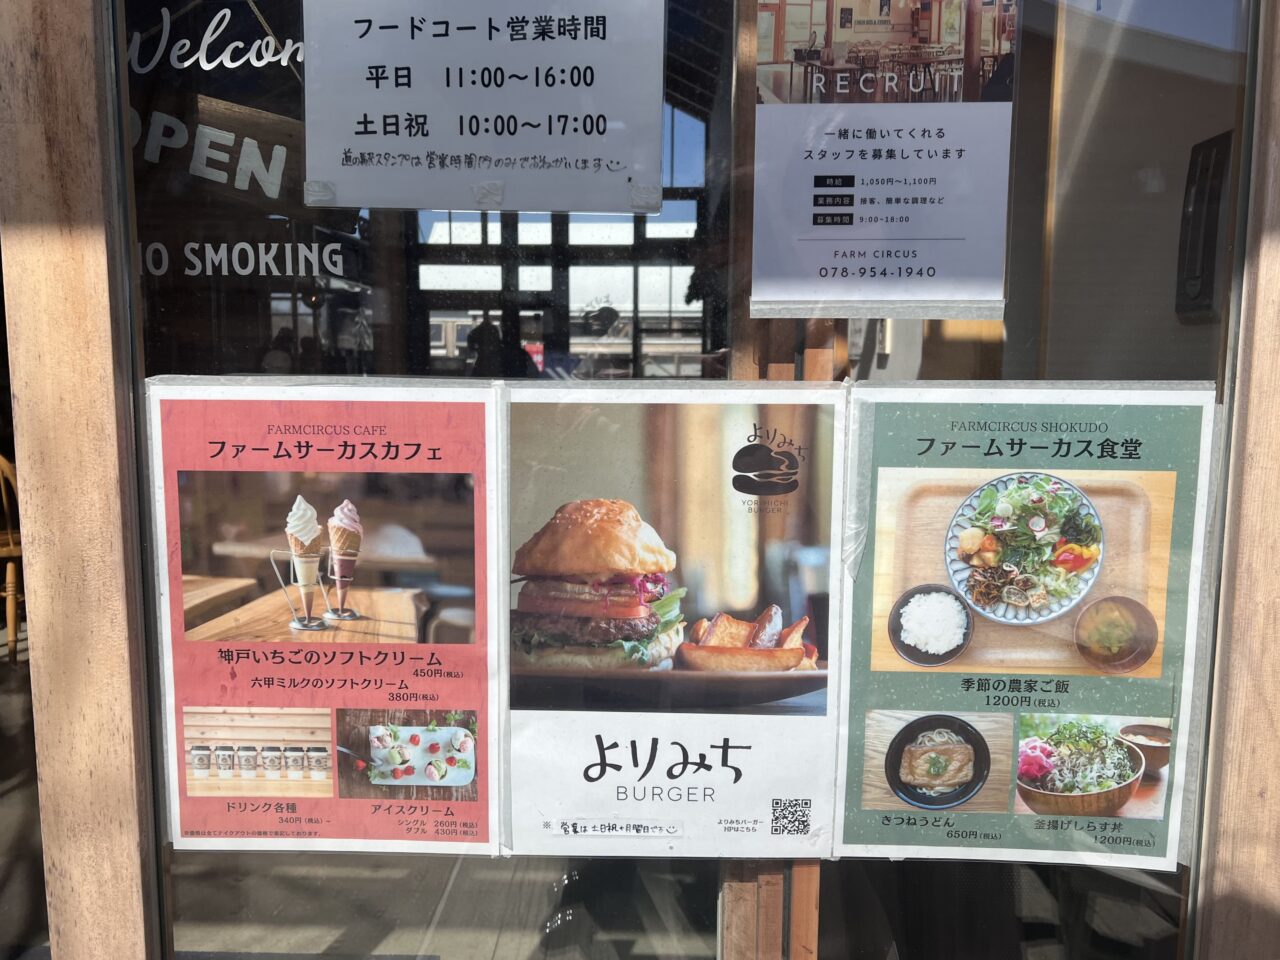 道の駅神戸フルーツフラワーパーク大沢のよりみちバーガーとファームサーカス食堂の季節の農家ご飯です。